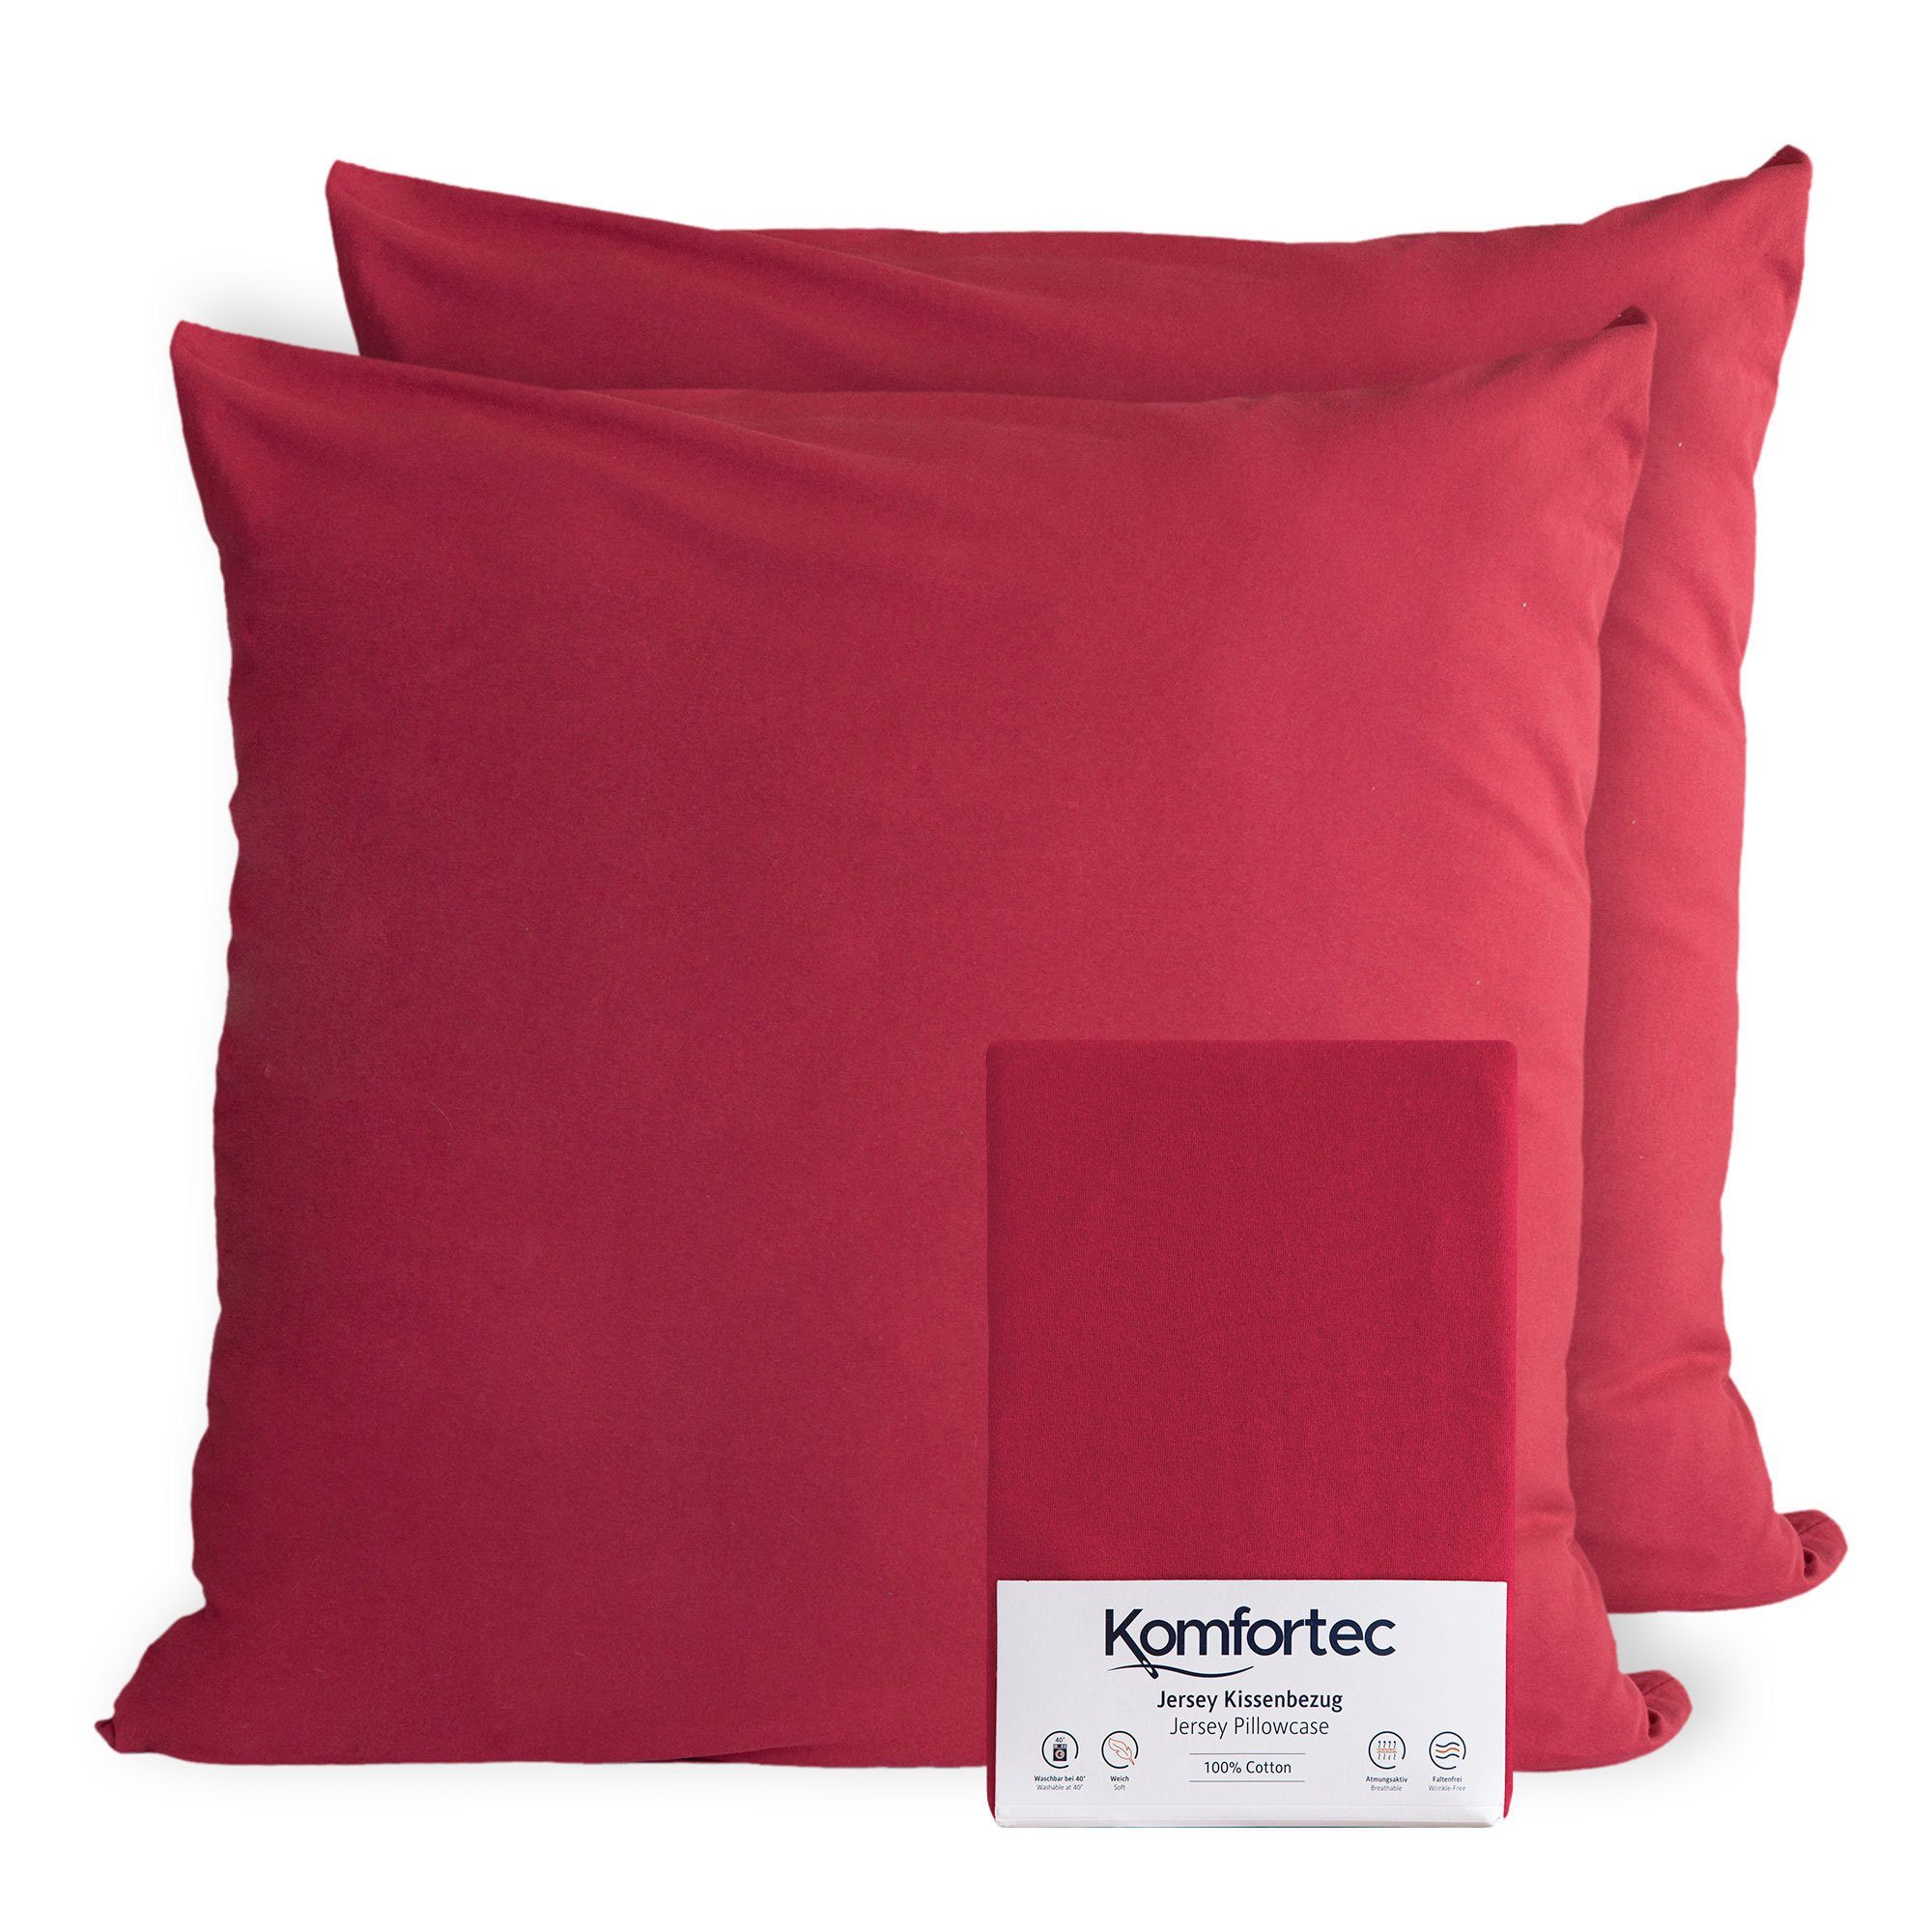 Kissenbezug 100% Baumwolle, 150 g/m², Komfortec (2 Stück), 40 x 40 cm, Kissenhülle, Superweicher Premium Jersey Kopfkissenbezug Aurora Rot